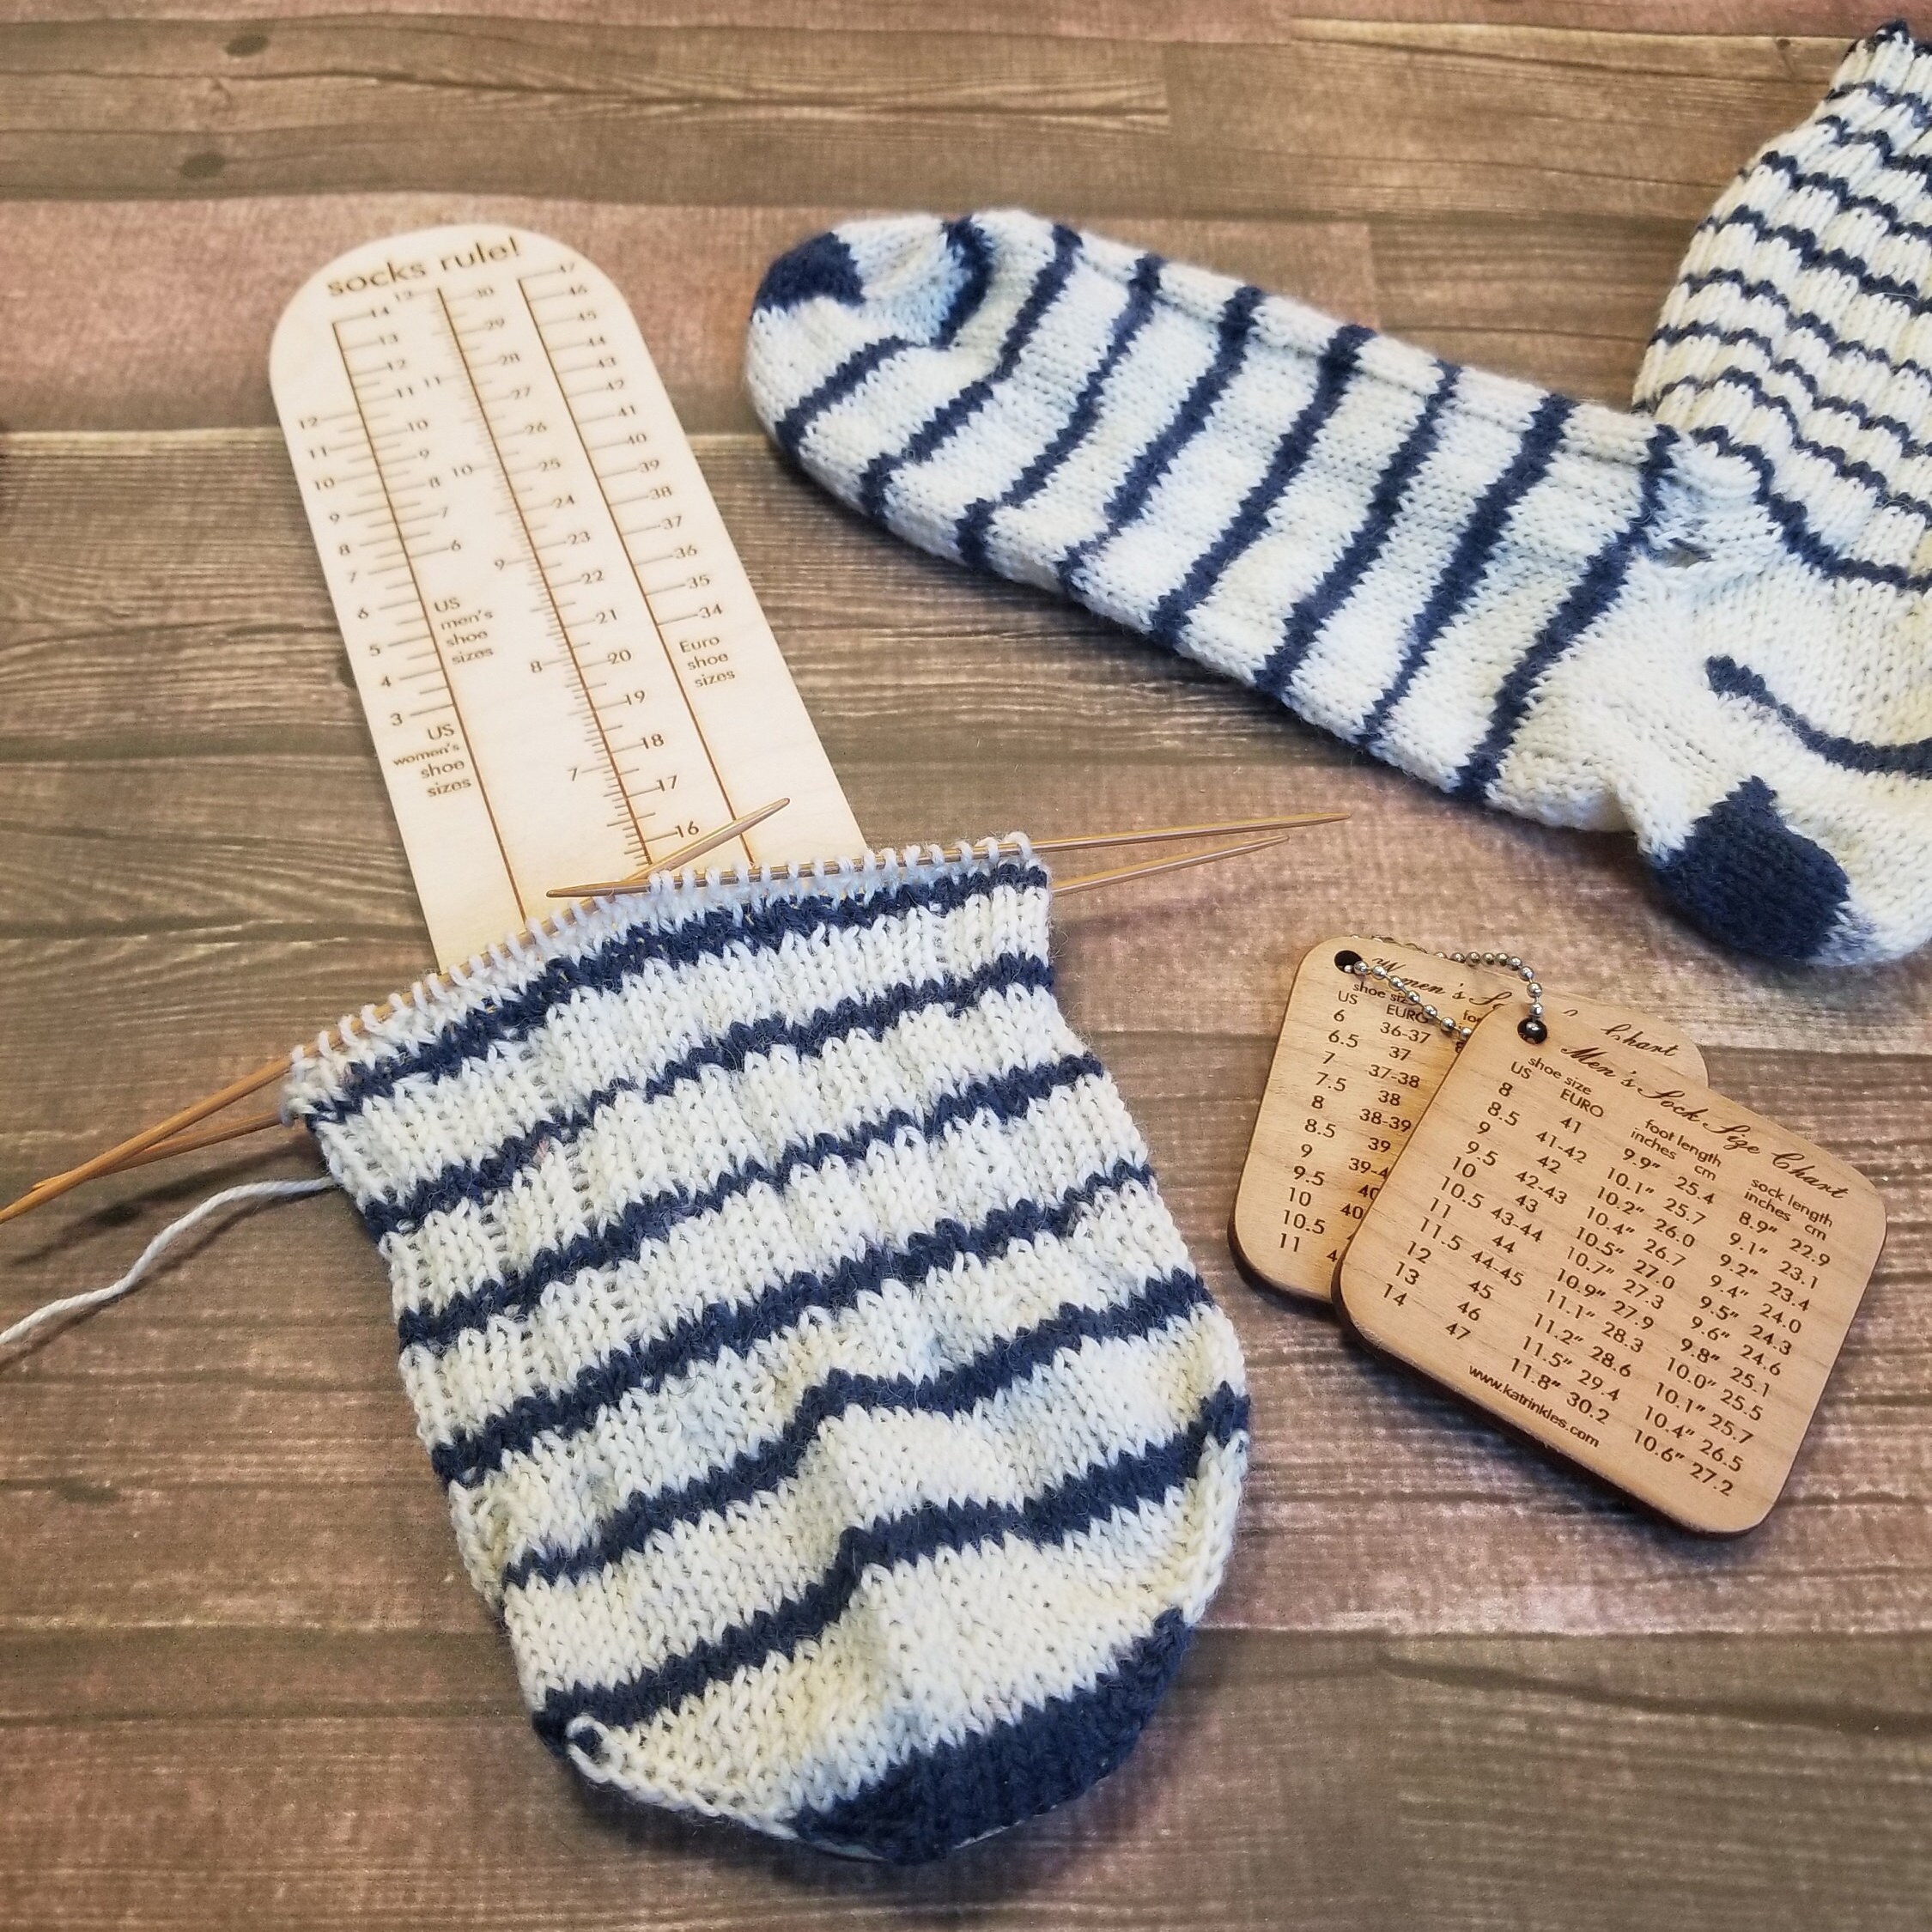 Katrinkles - Kids Socks Rule! Clear Ruler for Measuring Socks - Yarn Loop